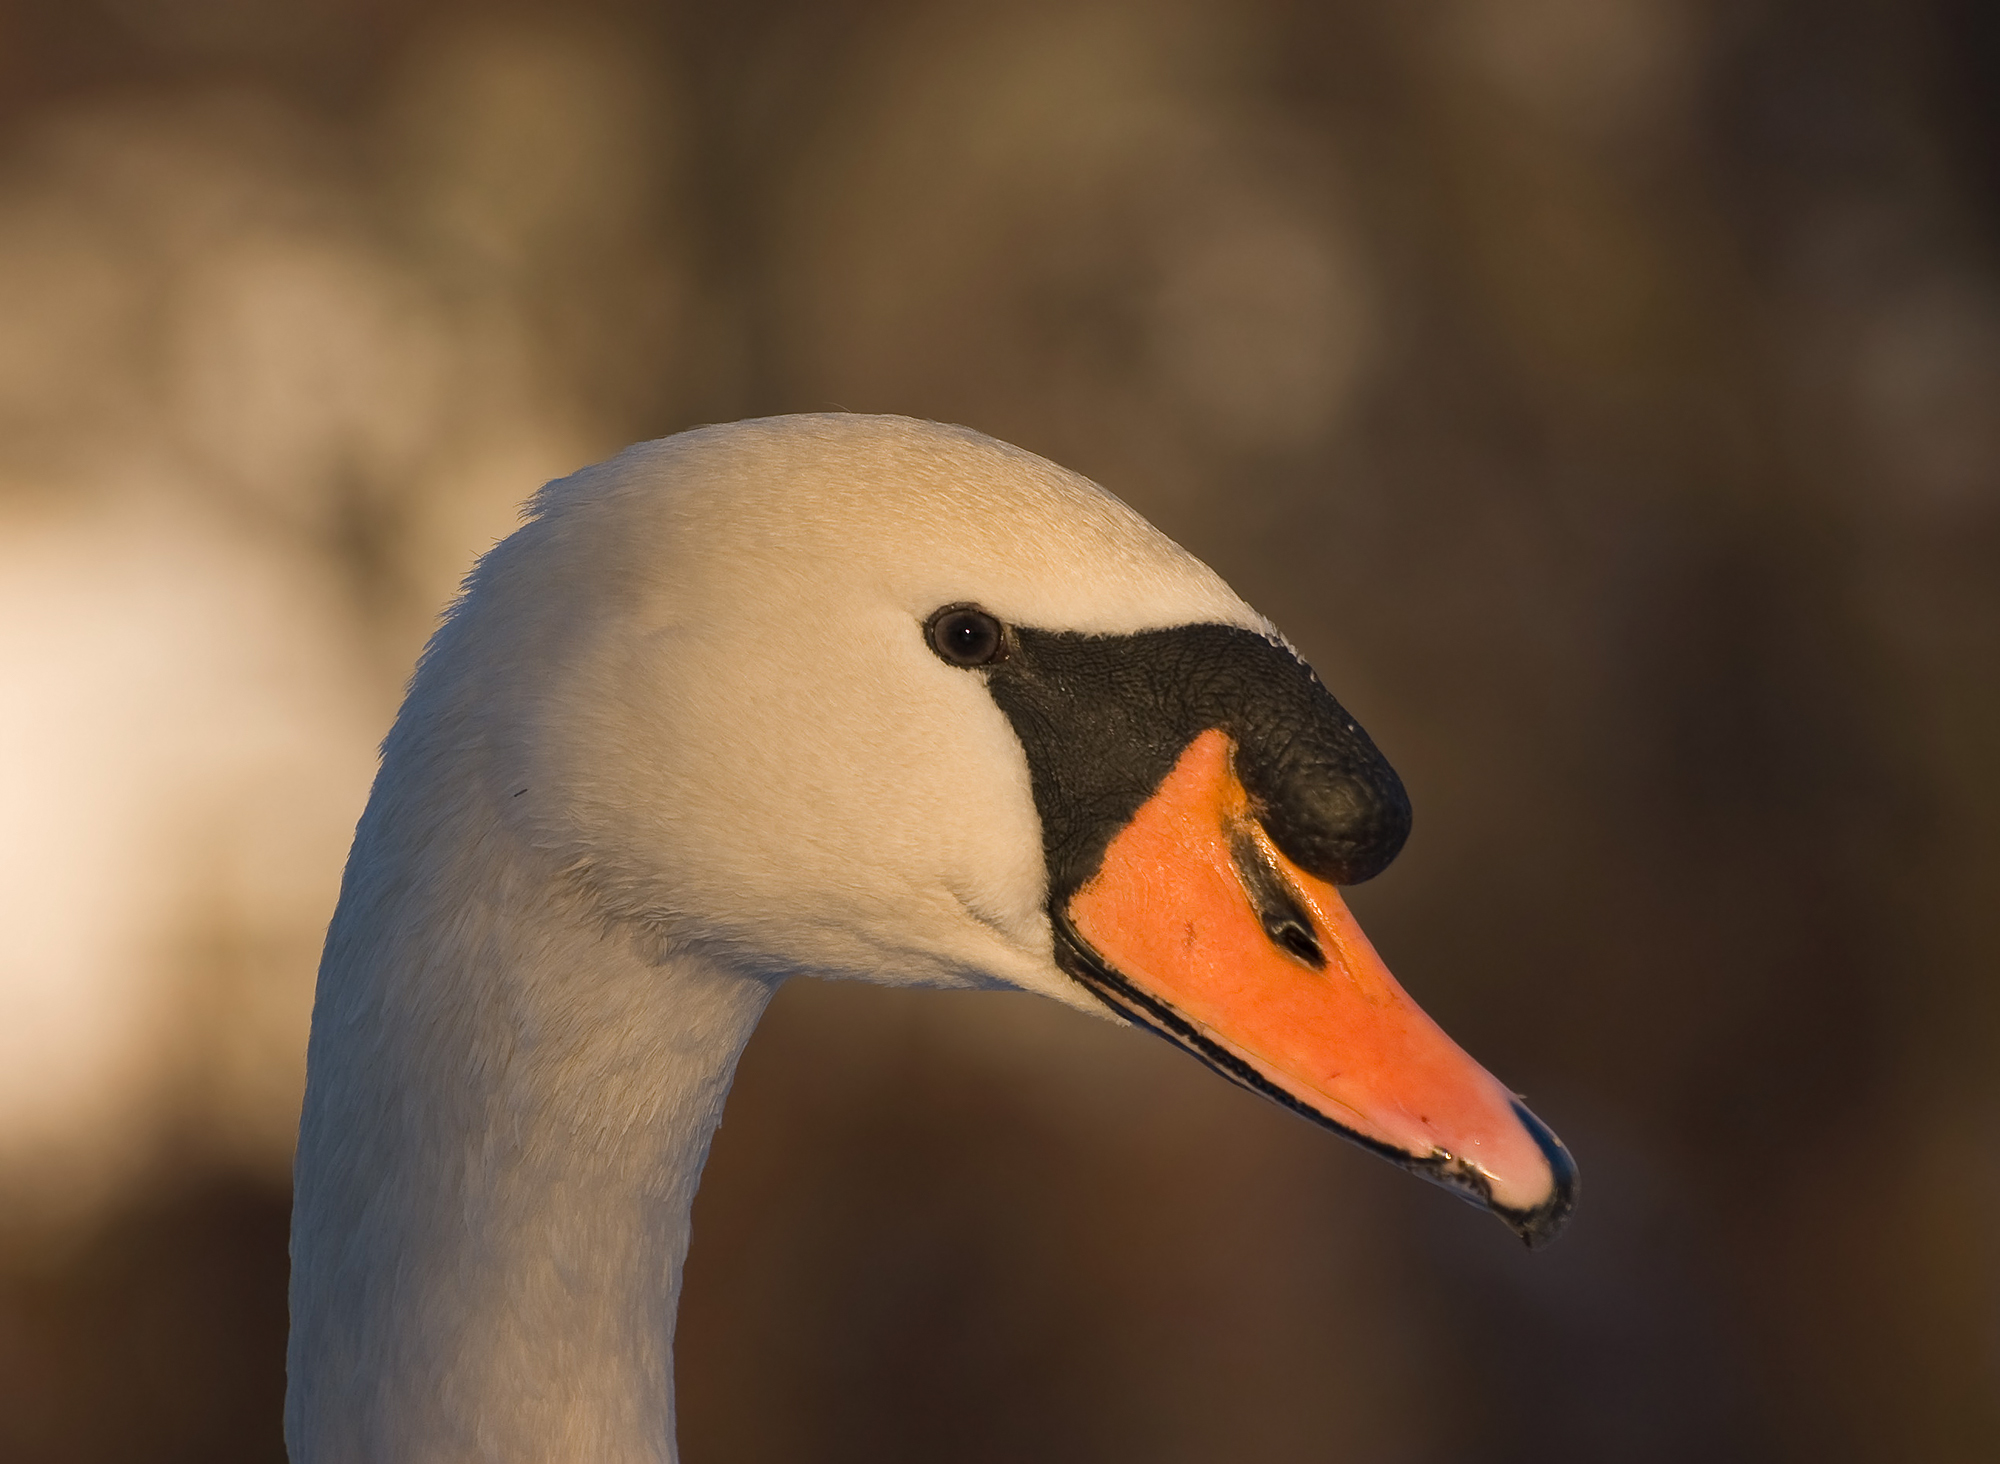 Swan closeup | Birds - Swans - Ducks | Pinterest | Bird